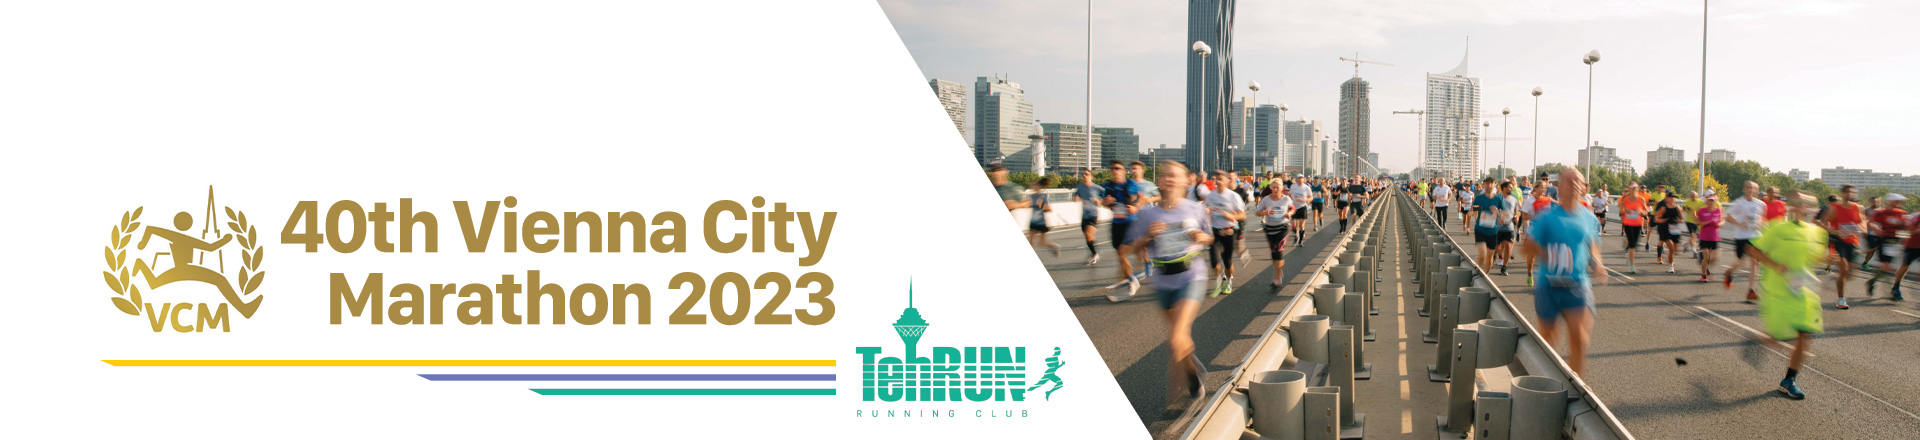 Vienna-City-Marathon-2023-header